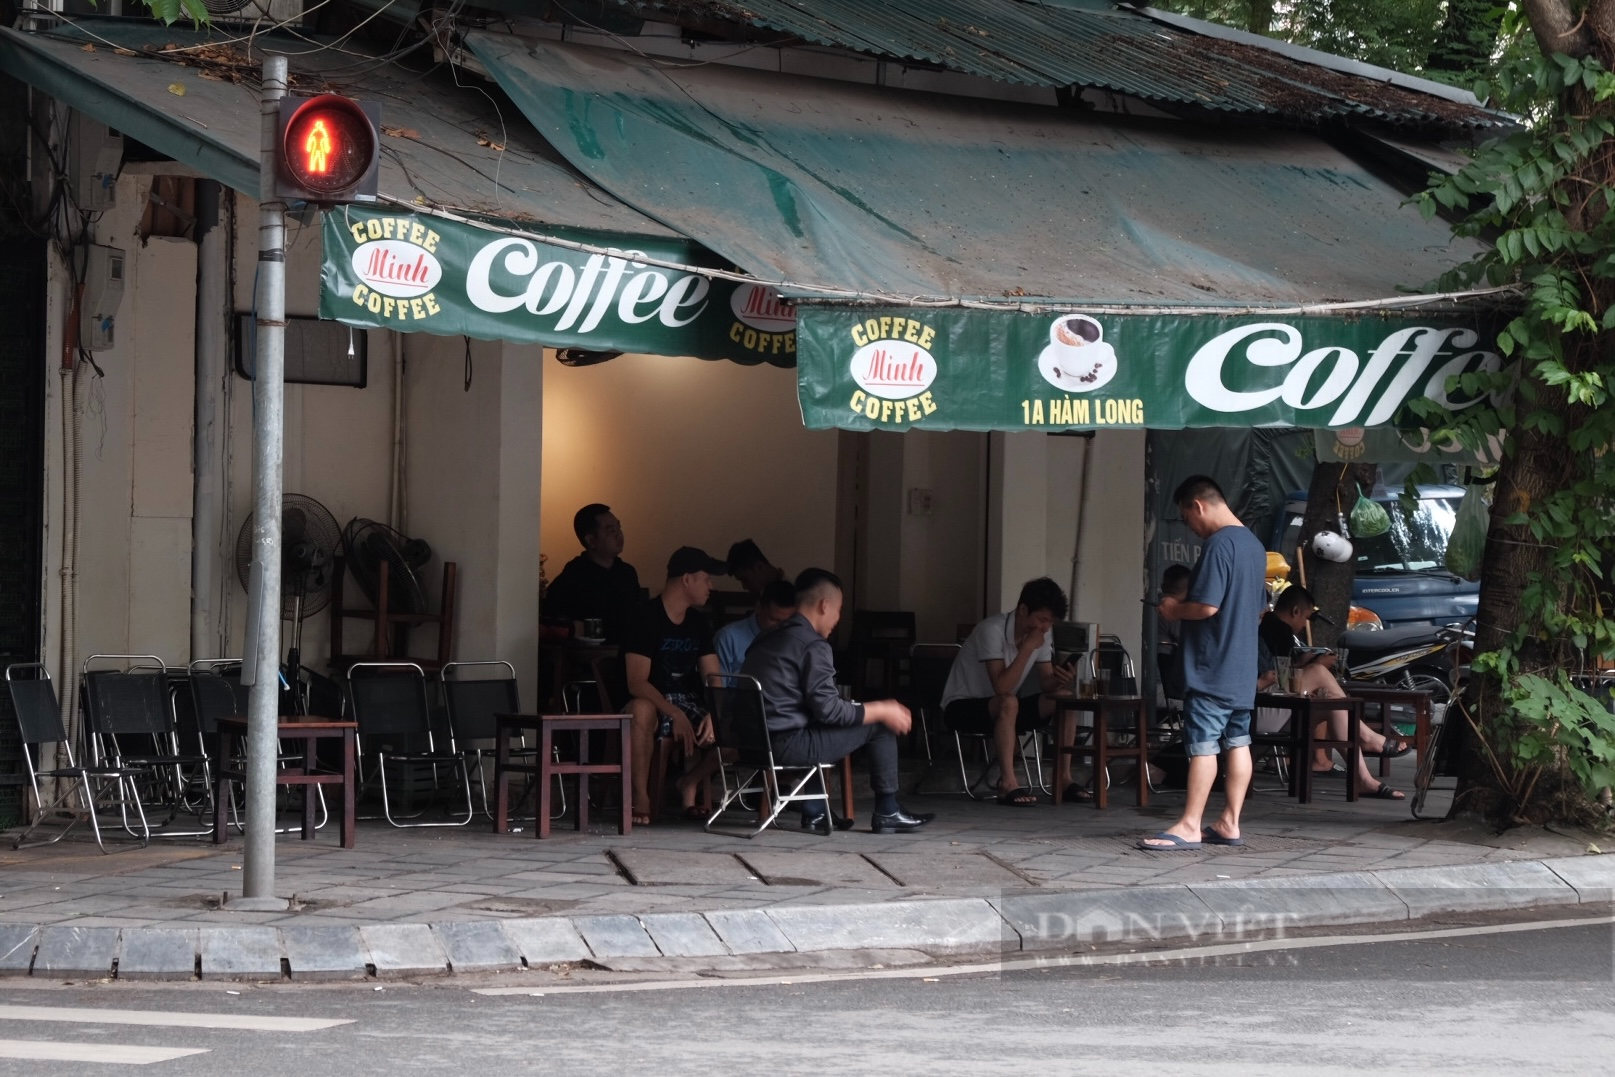 Hàng loạt quán cà phê lấn chiếm vỉa hè của người đi bộ ở quận Hoàn Kiếm (Hà Nội) - Ảnh 4.